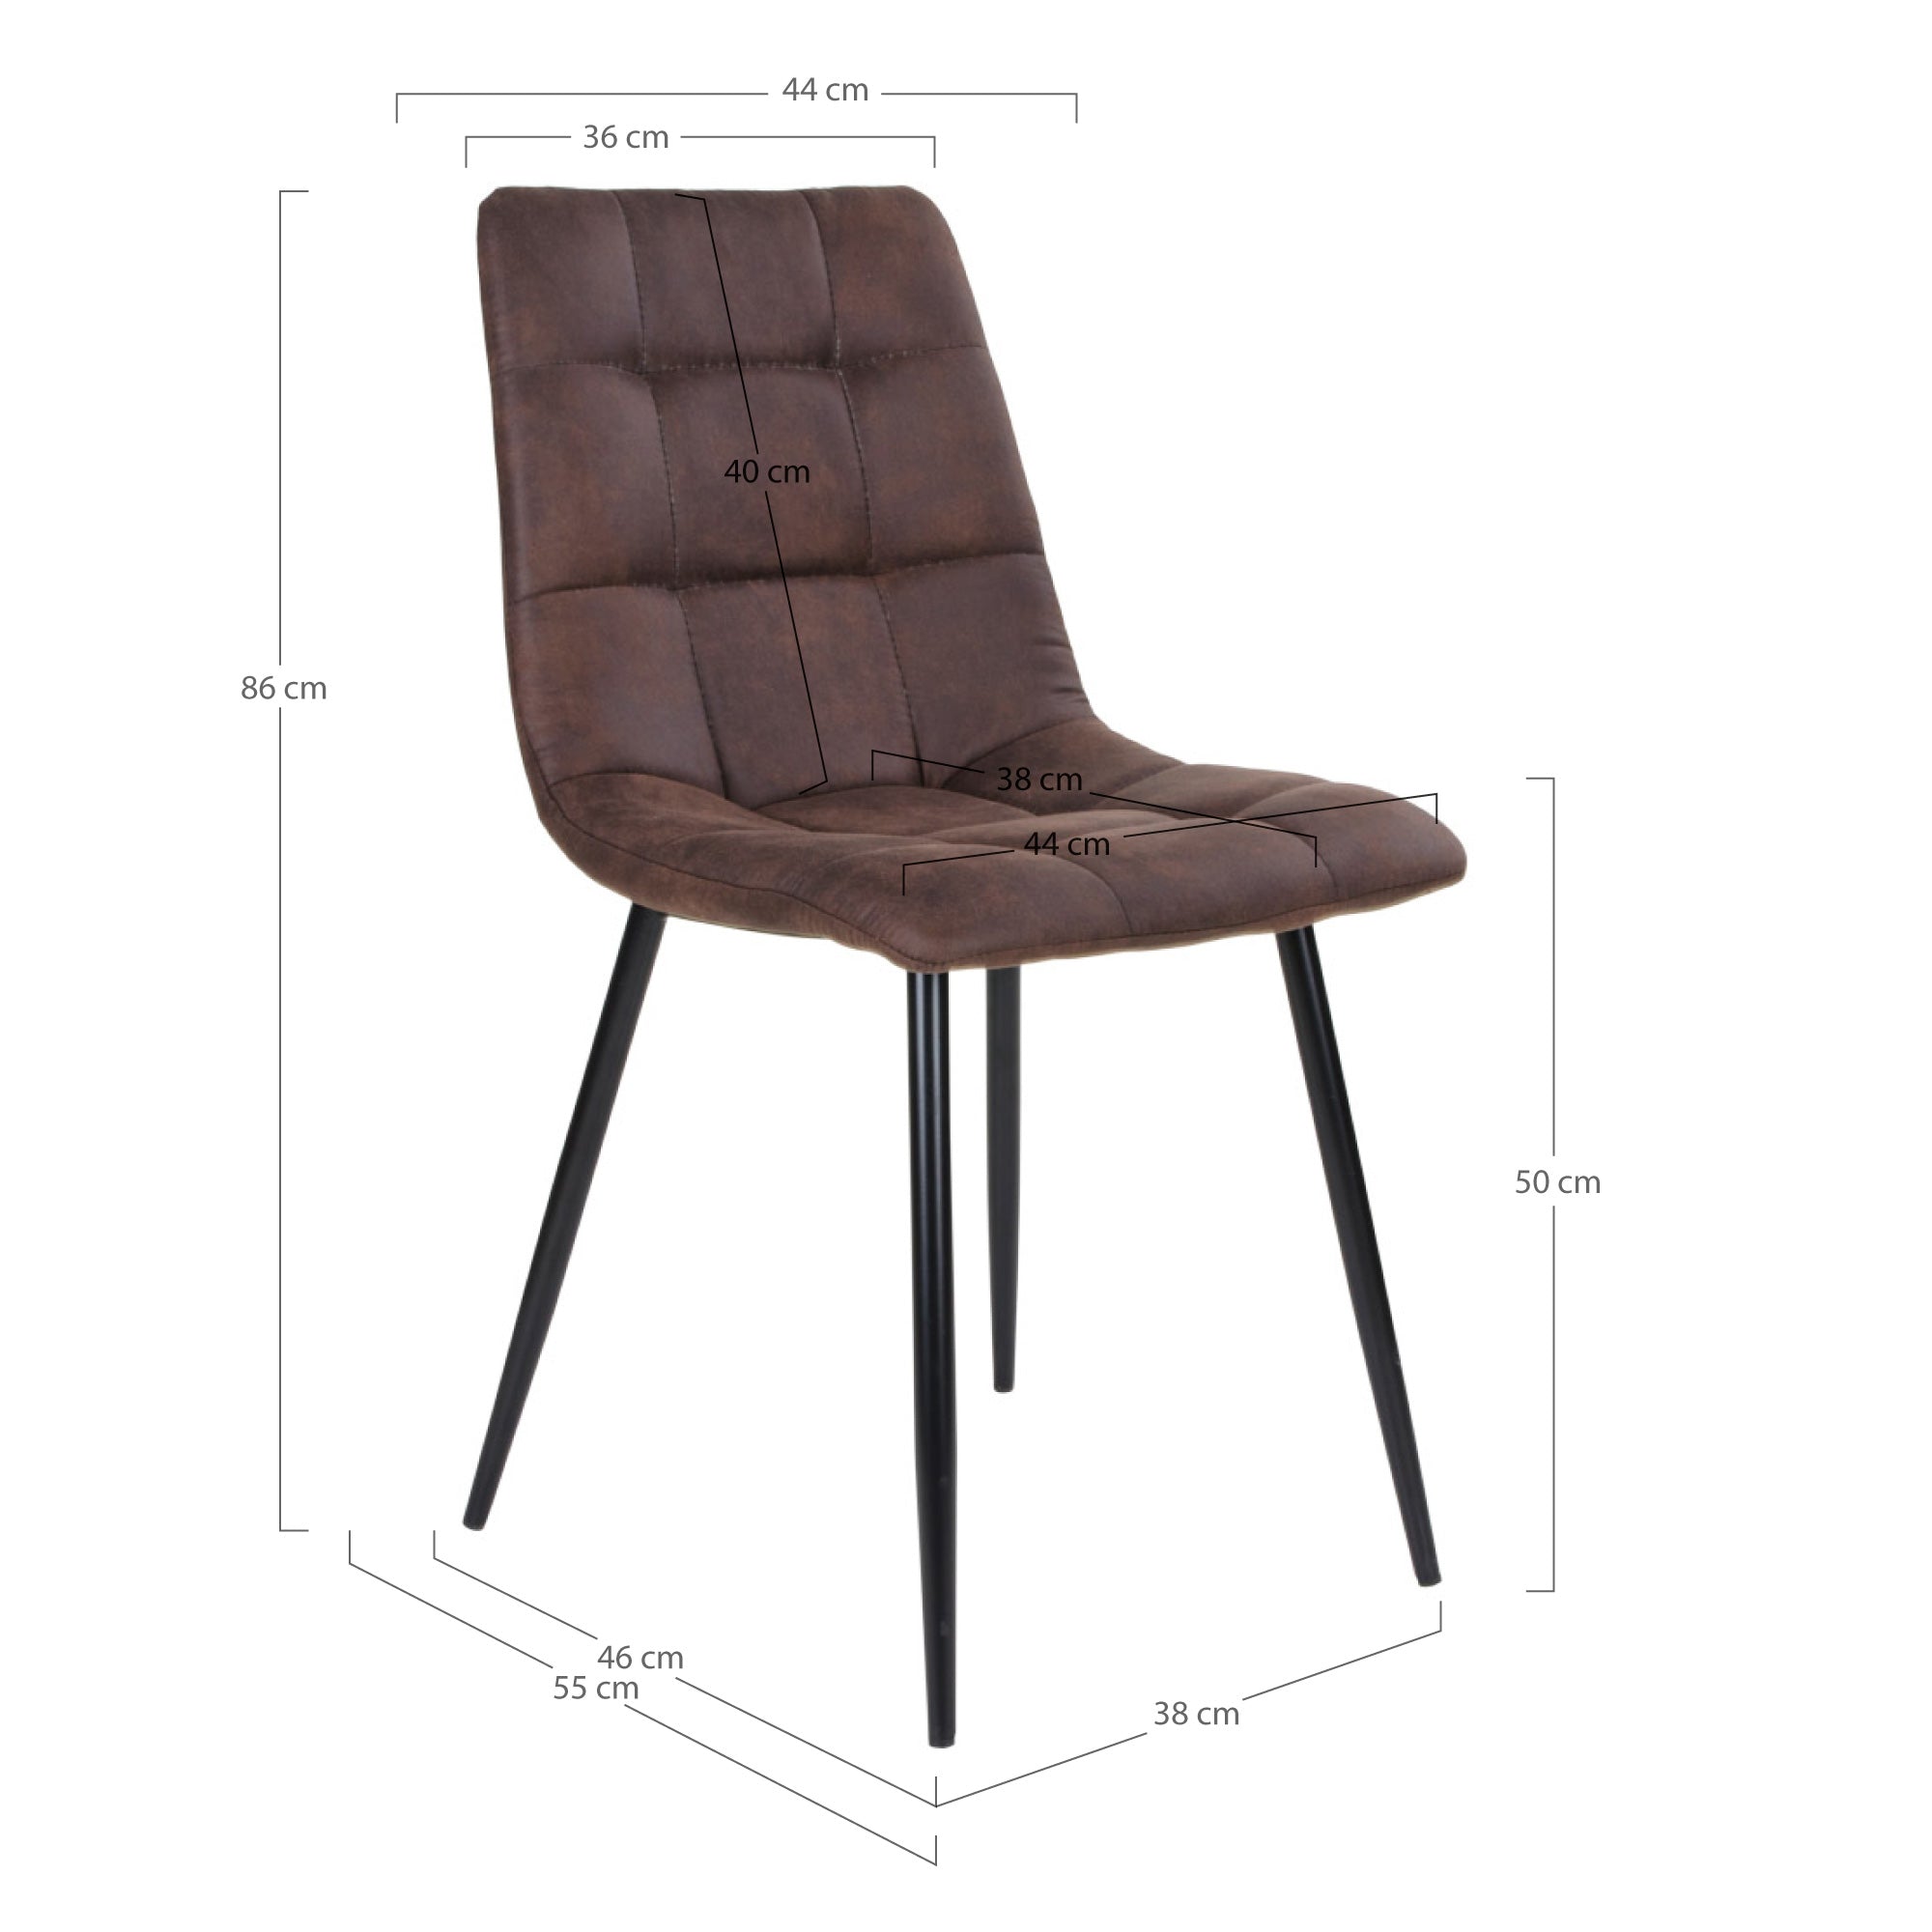 Middelfart Spisebordsstol - Spisebordsstol I Microfiber, Mørkebrun Med Sorte Ben ⎮ Sæt af 2 stk. ⎮ 5713917000432 ⎮ 1001191 